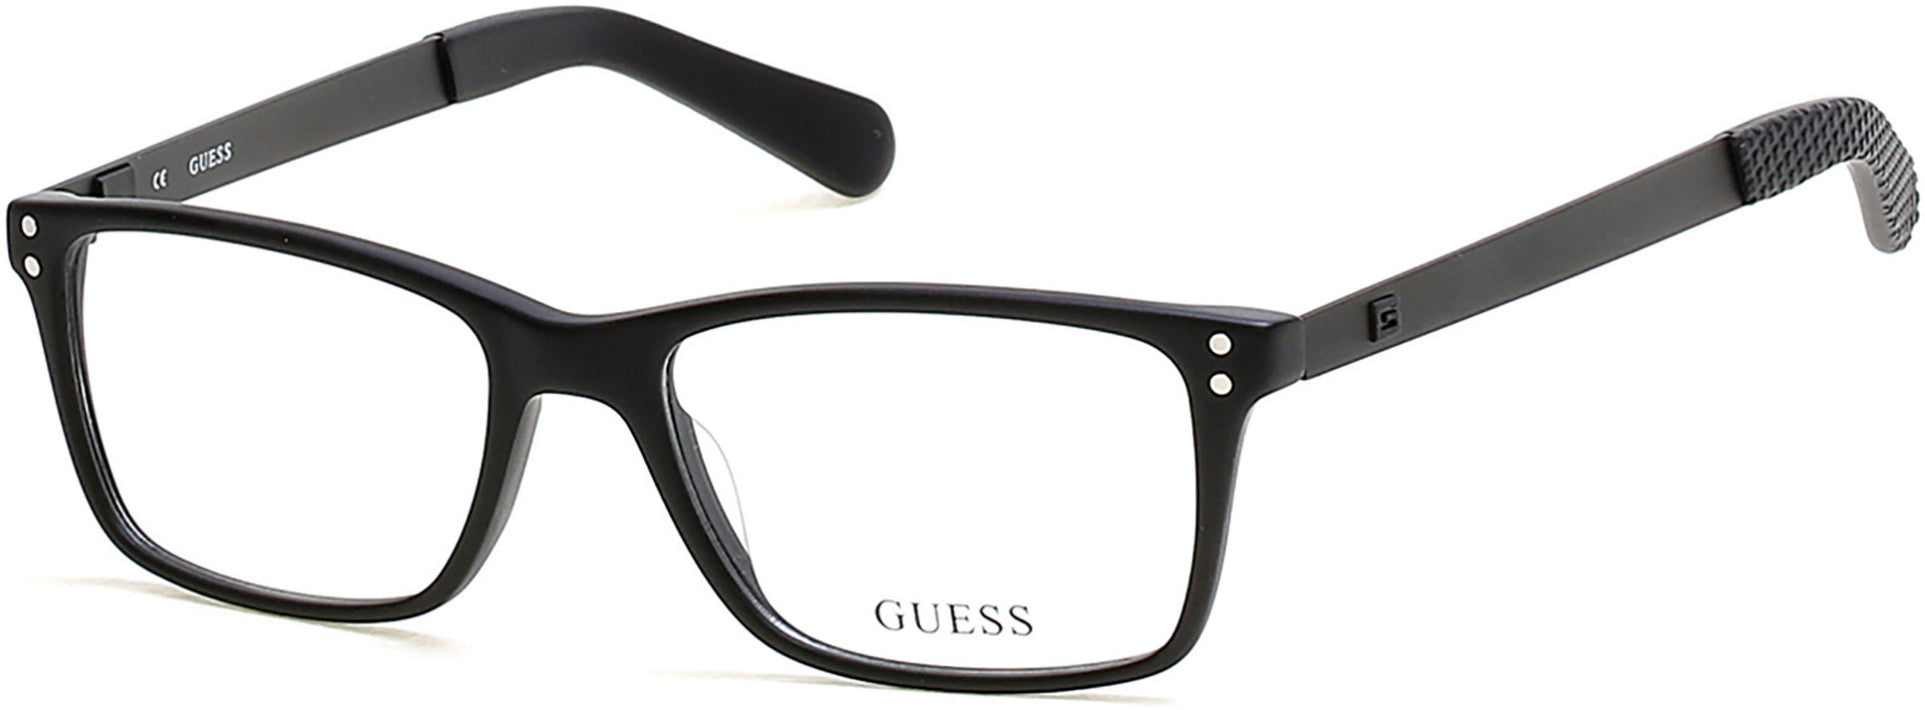 Guess GU1869 Eyeglasses 002-002 - Matte Black